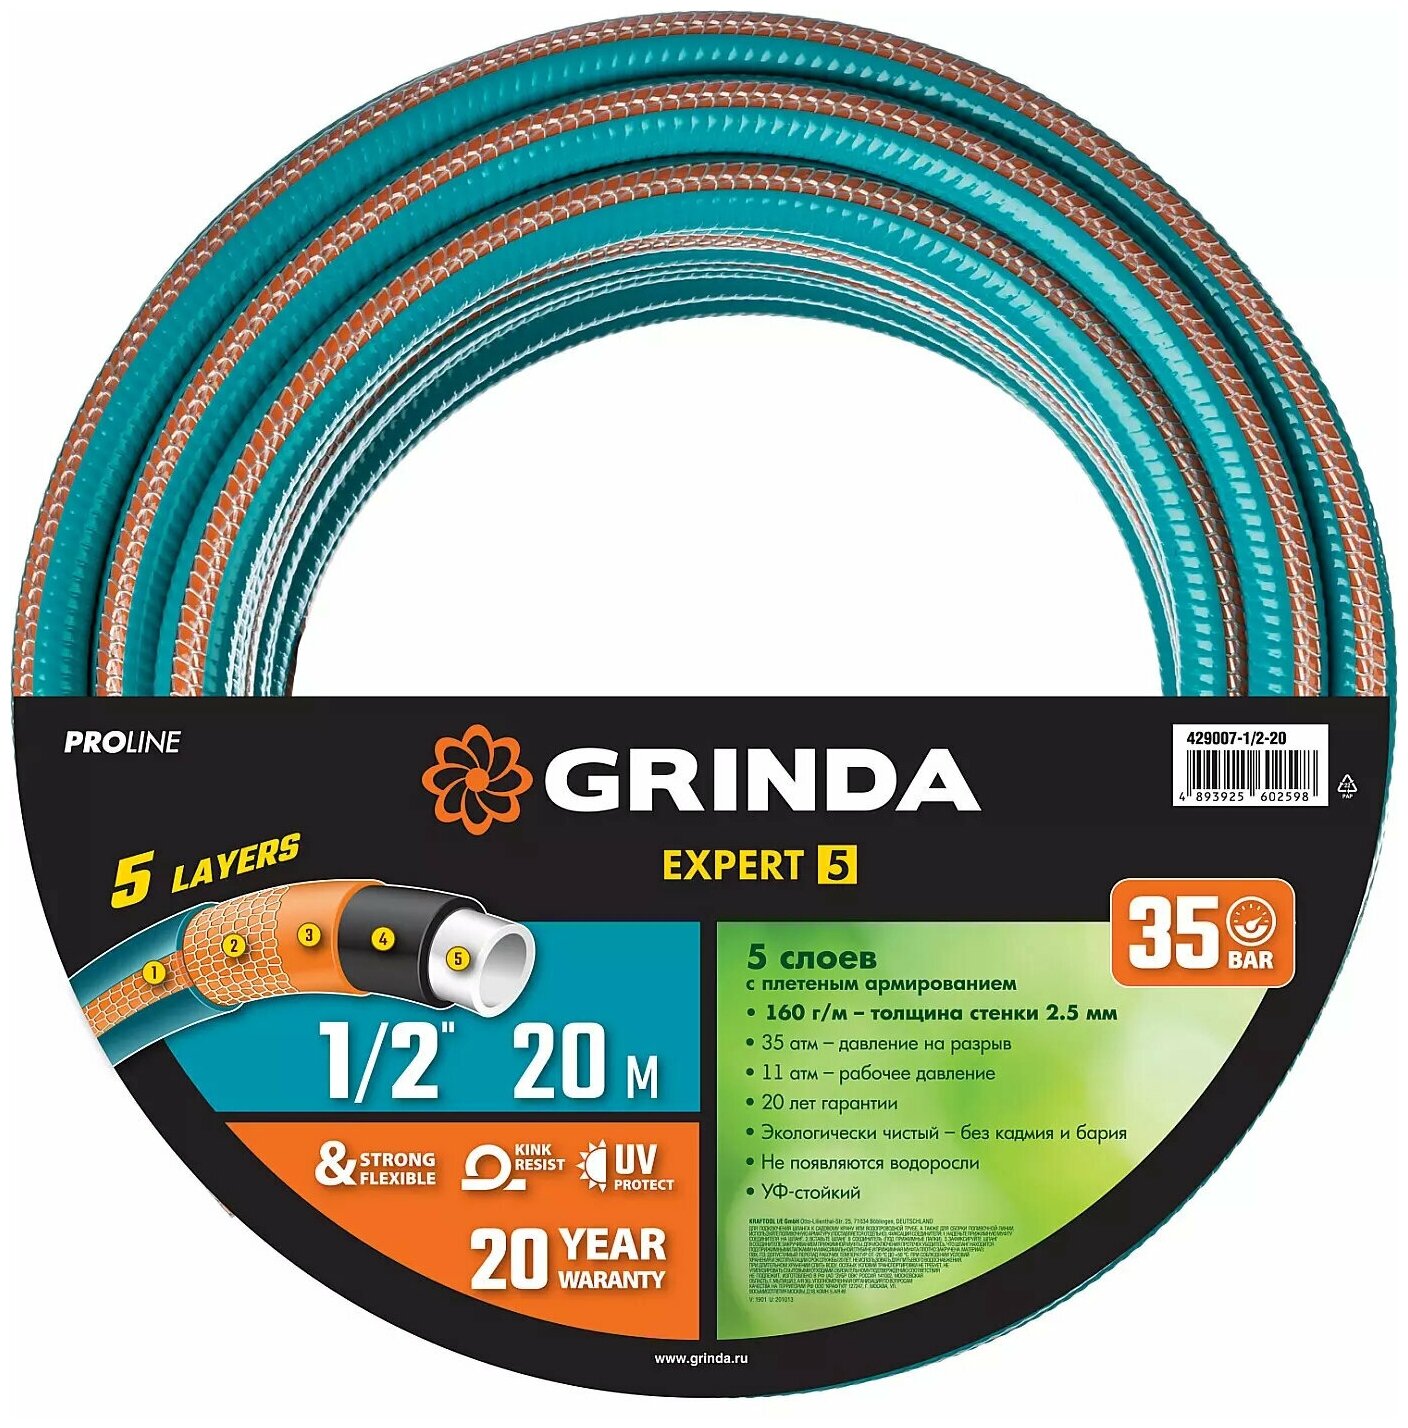 Поливочный шланг GRINDA PROLine Expert 5 1/2", 20 м, 35 атм, пятислойный, армированный 429007-1/2-20